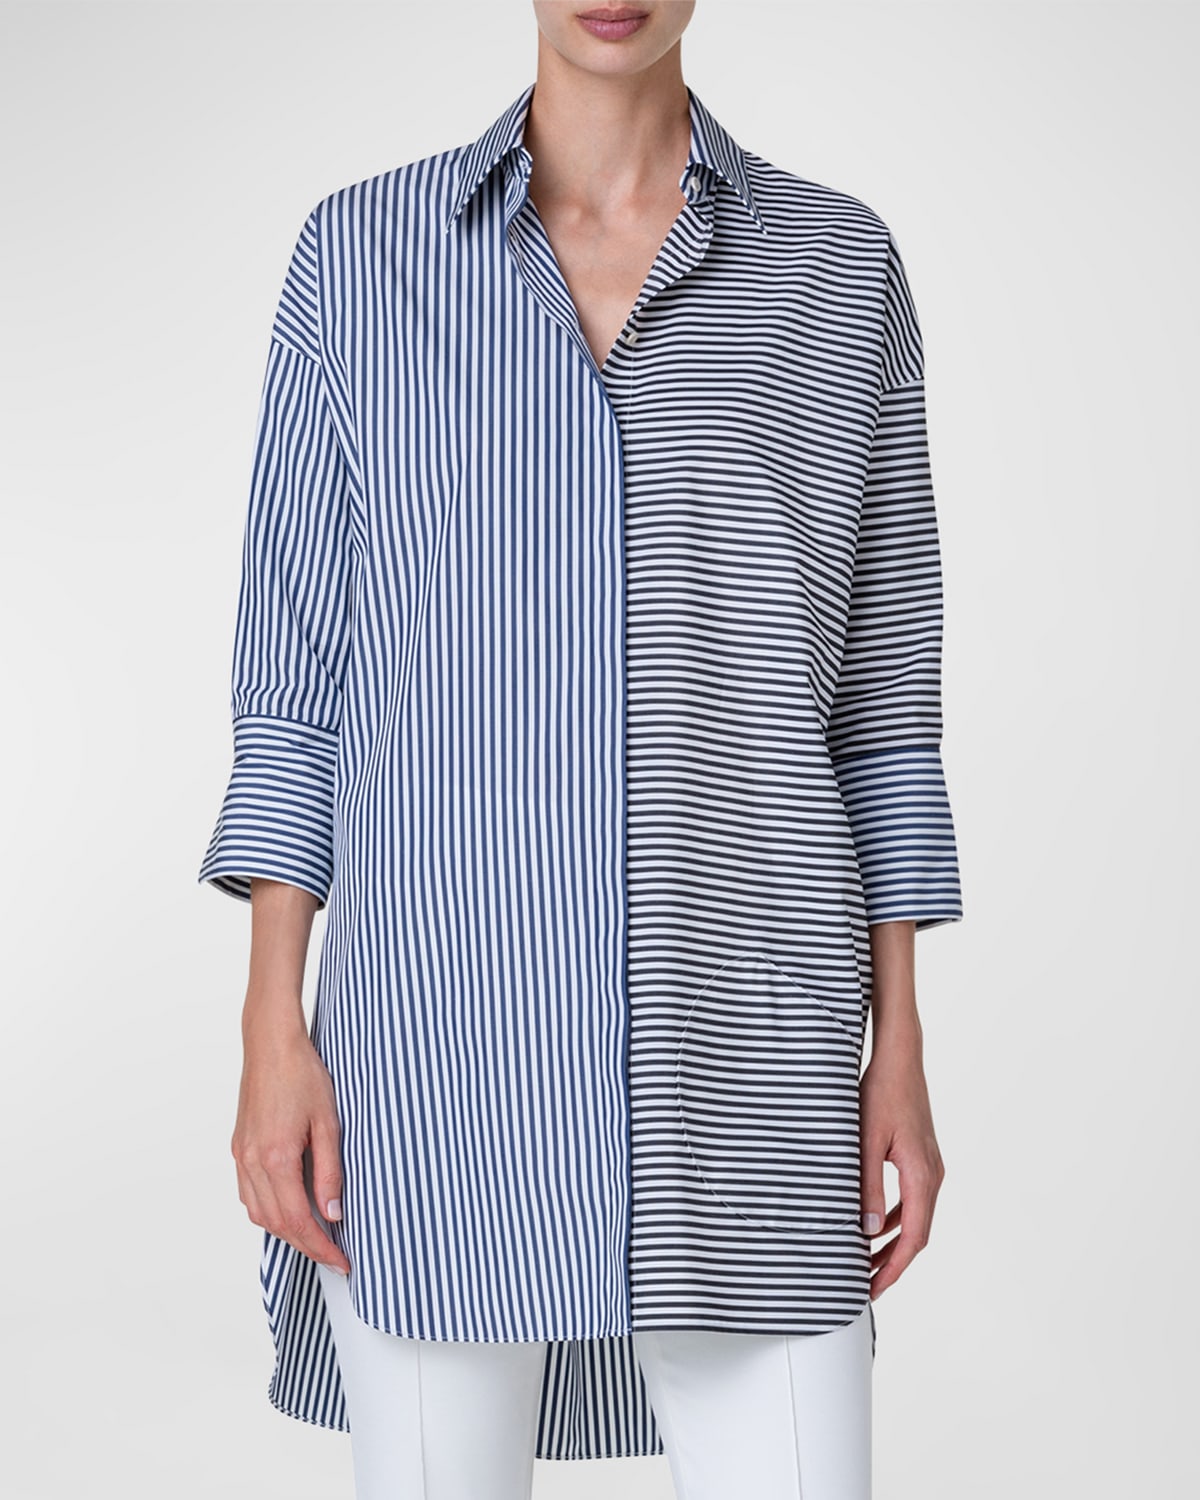 Akris Punto grid-pattern Cotton Shirtdress - Farfetch